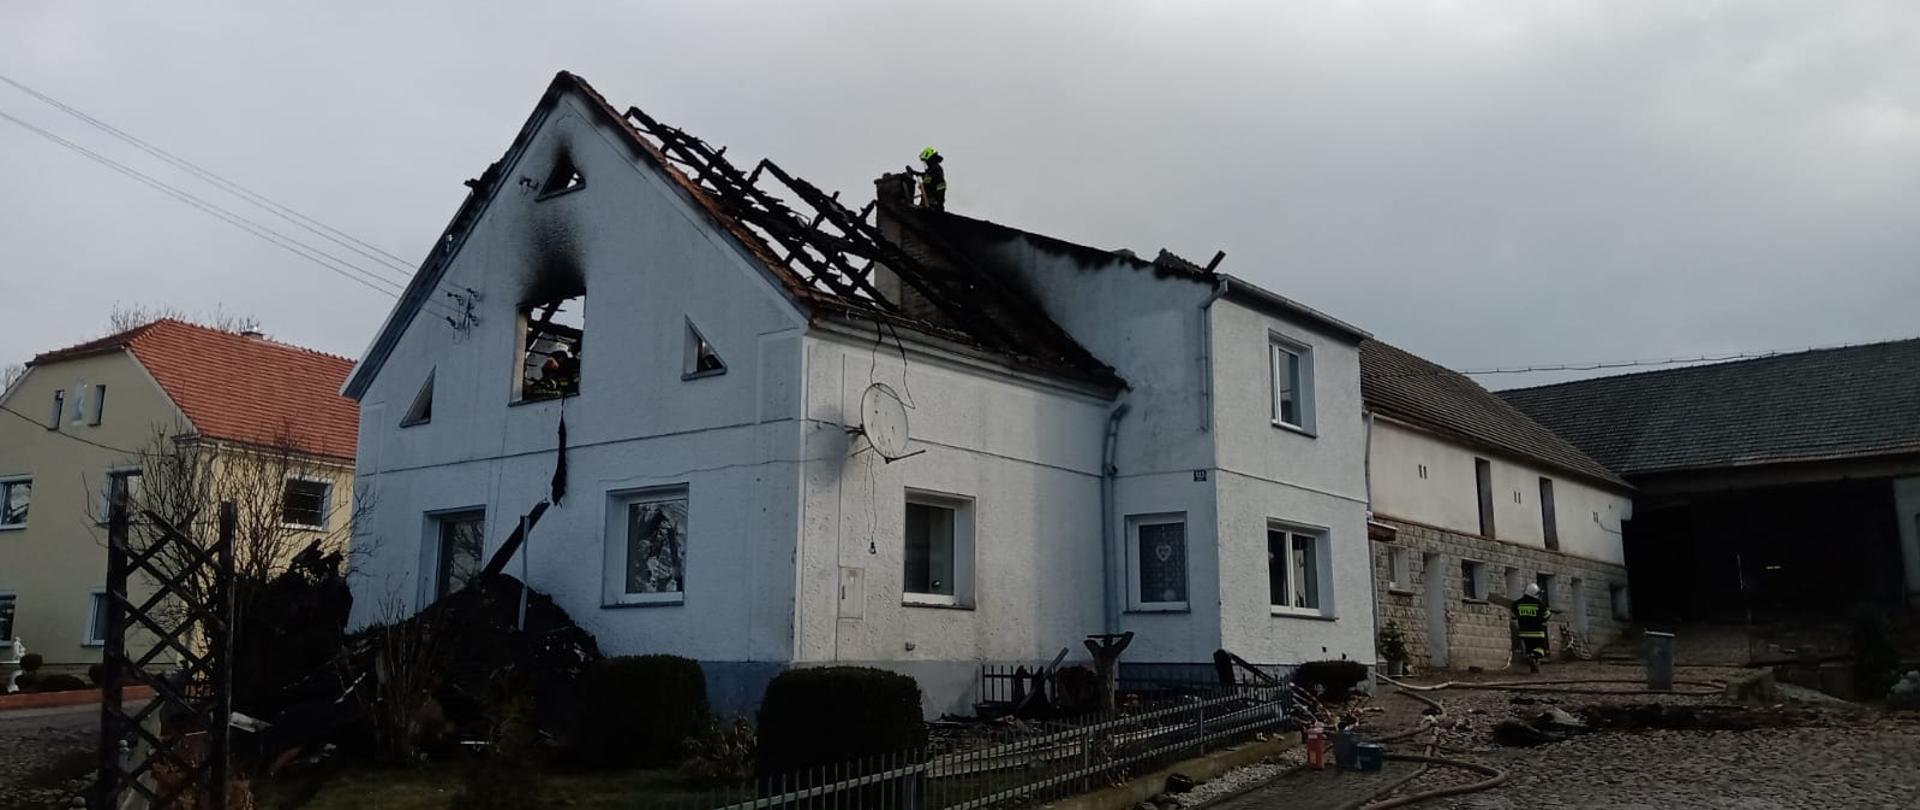 Zdjęcie przedstawia dom jednorodzinny w trakcie działań gaśniczych w miejscowości Śmicz. Wewnątrz obiektu, na strychu widoczni strażacy. Dach spalony.